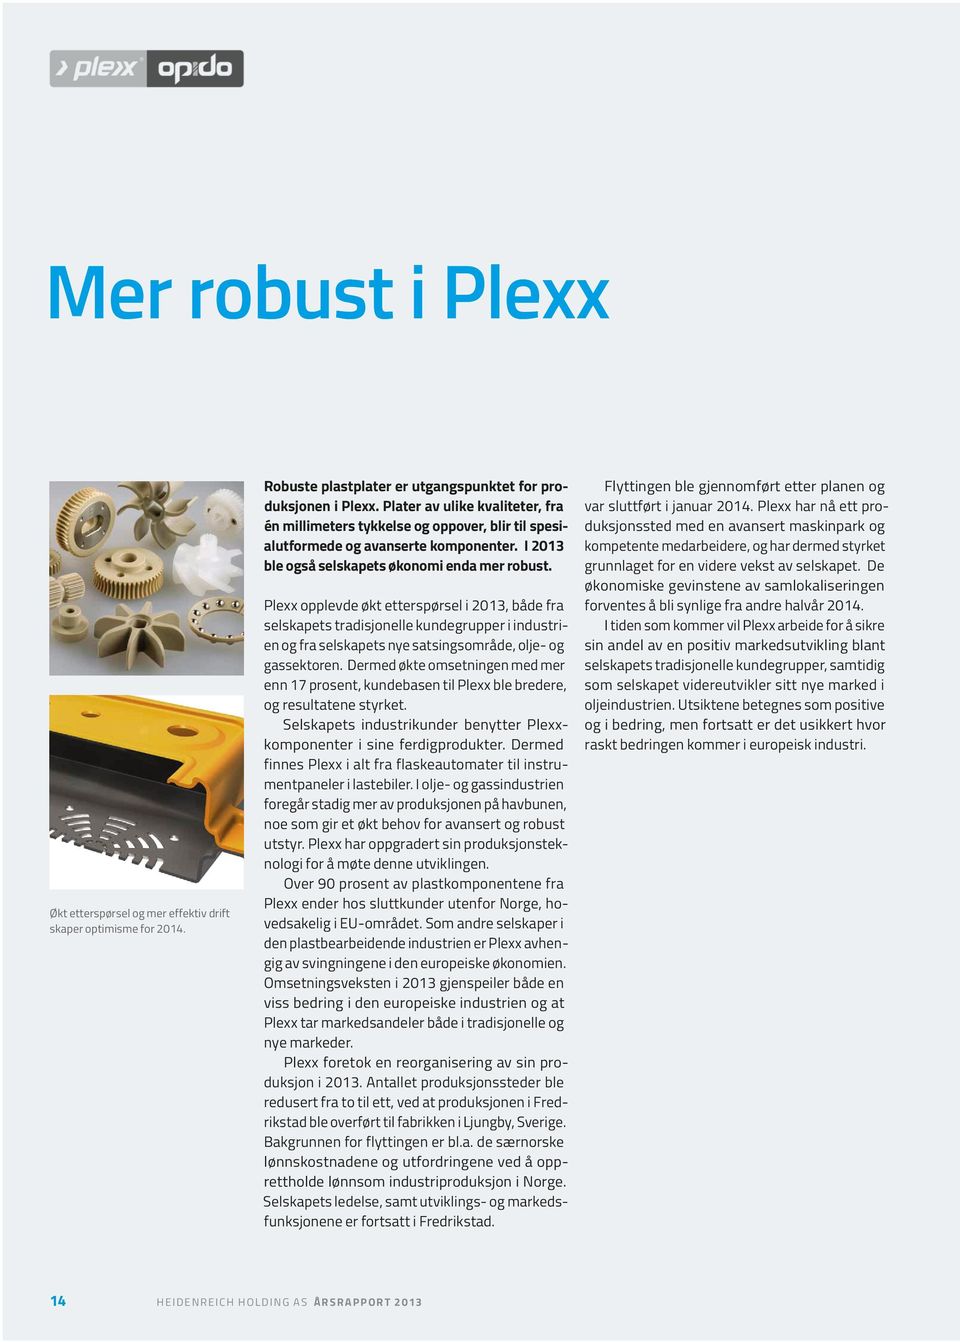 Plexx opplevde økt etterspørsel i 2013, både fra selskapets tradisjonelle kundegrupper i industrien og fra selskapets nye satsingsområde, olje- og gassektoren.